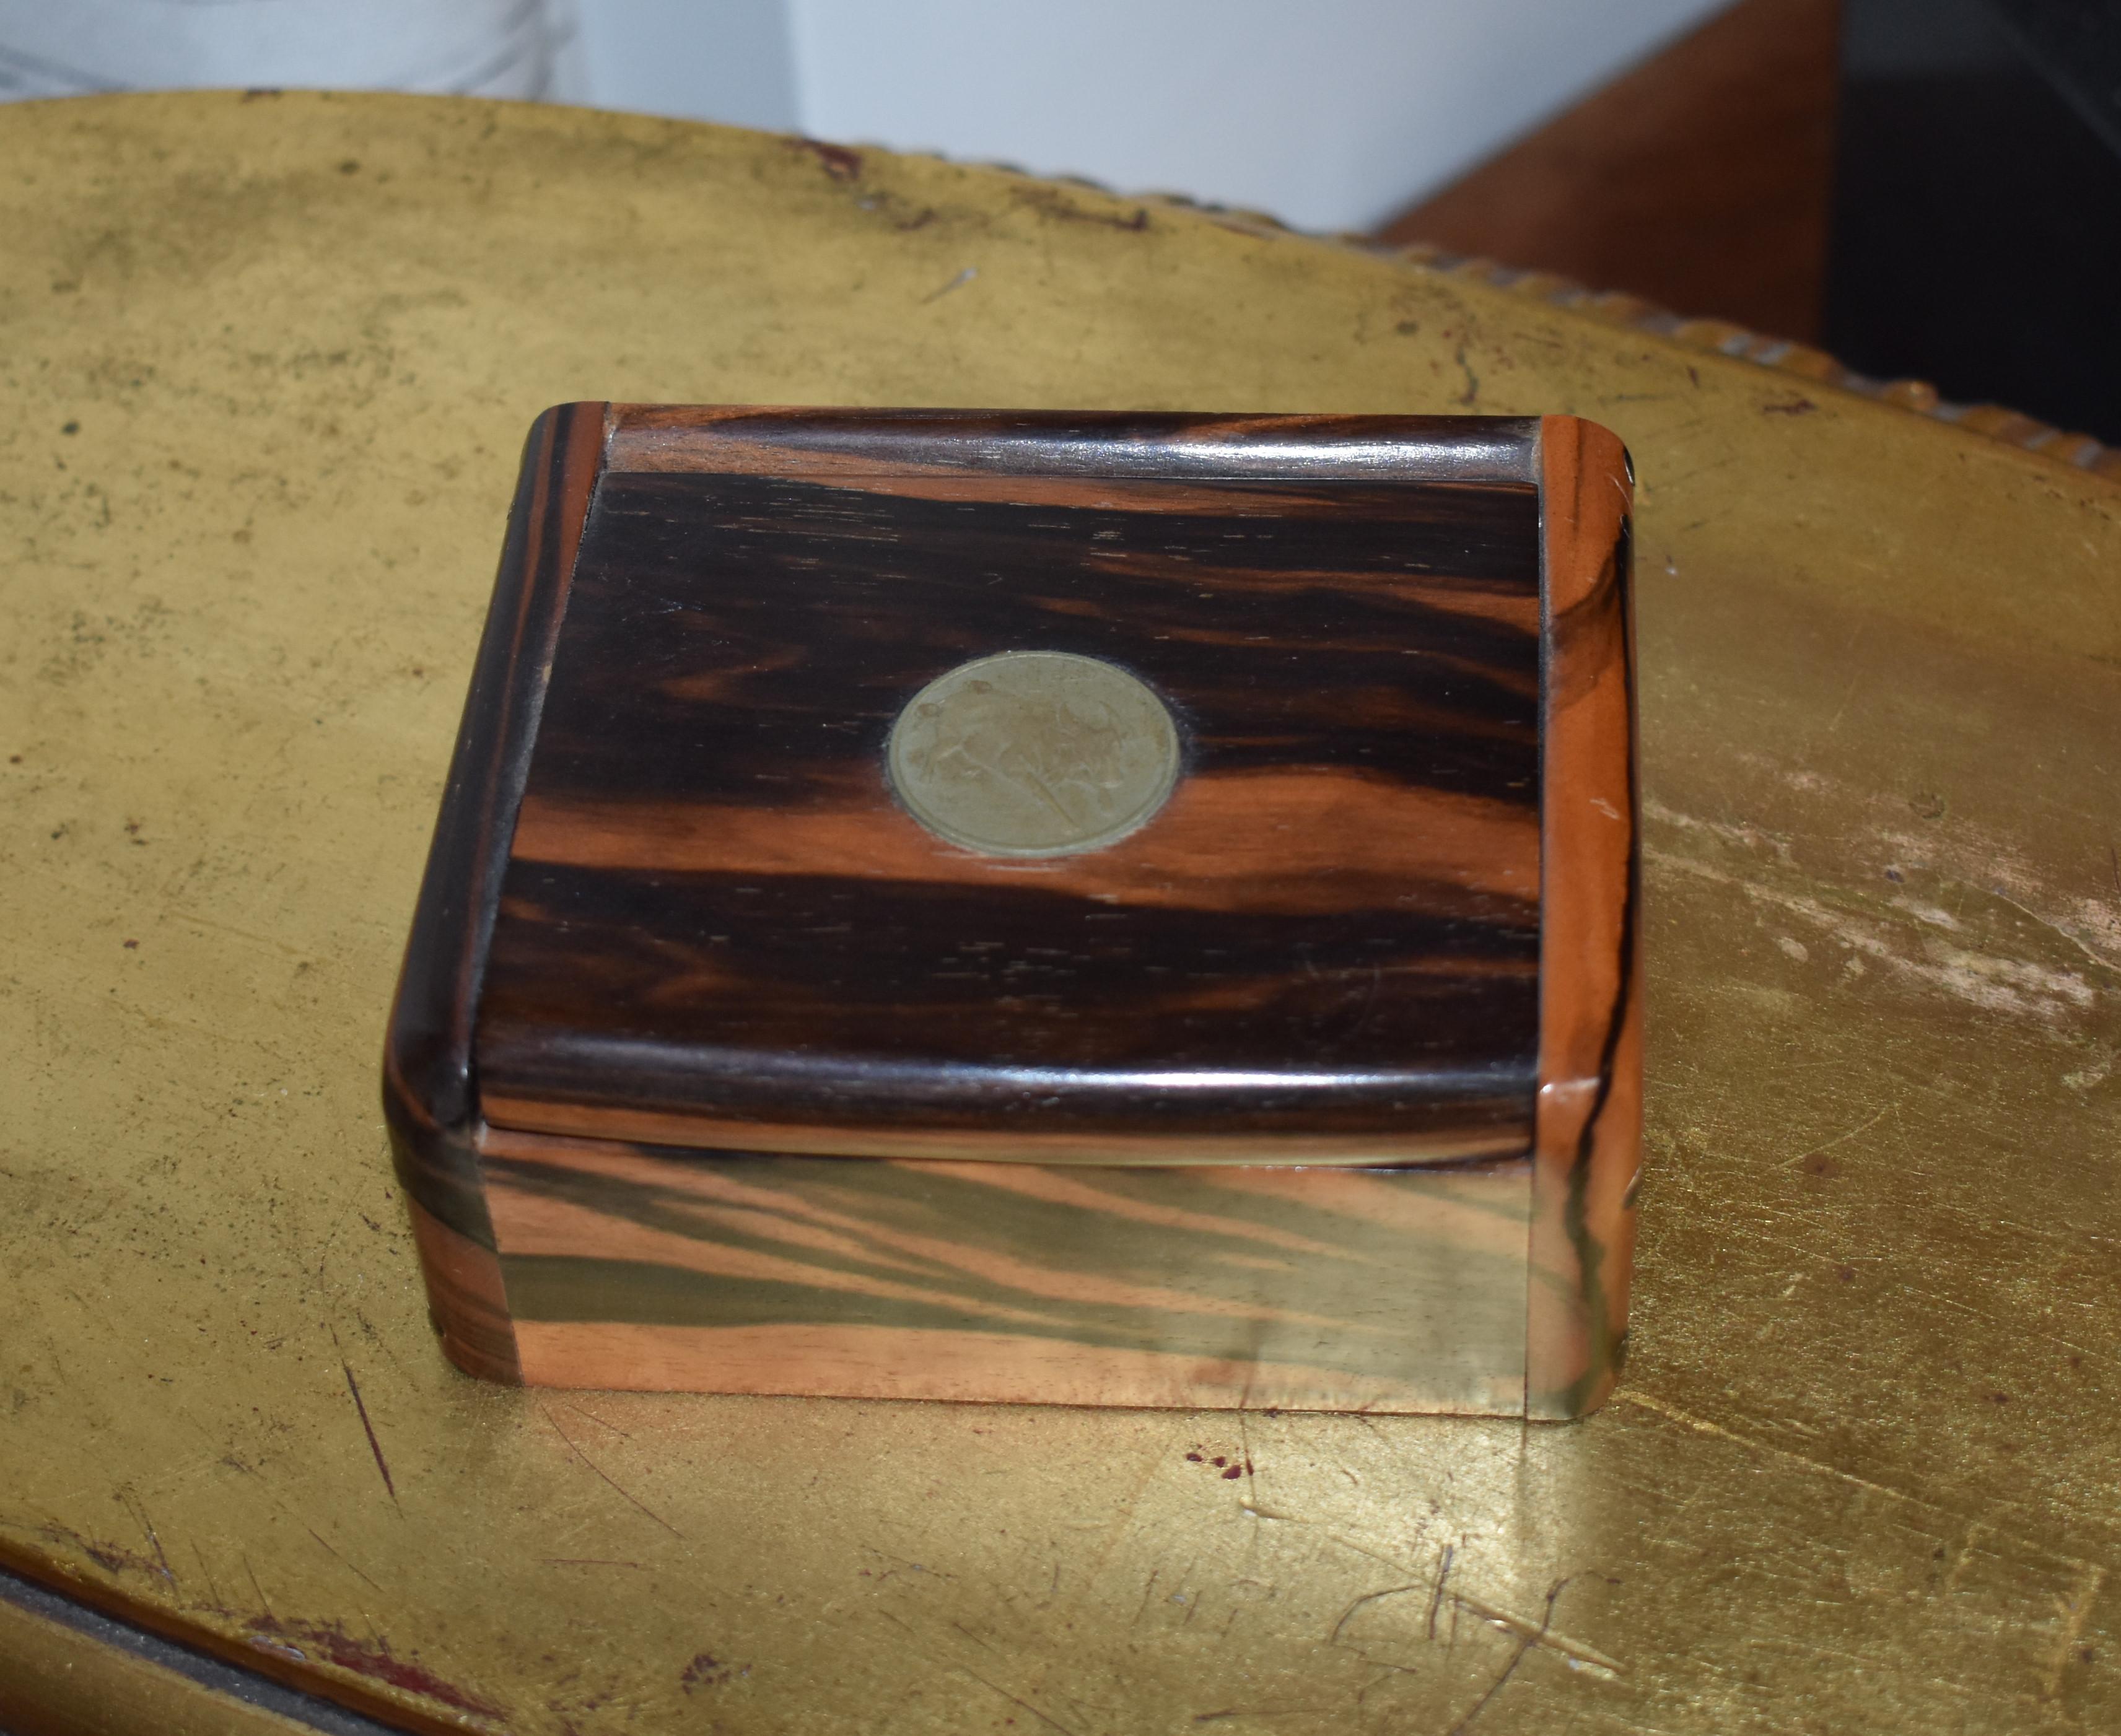 Small elegant jewelry zebra box with A Peso coin.